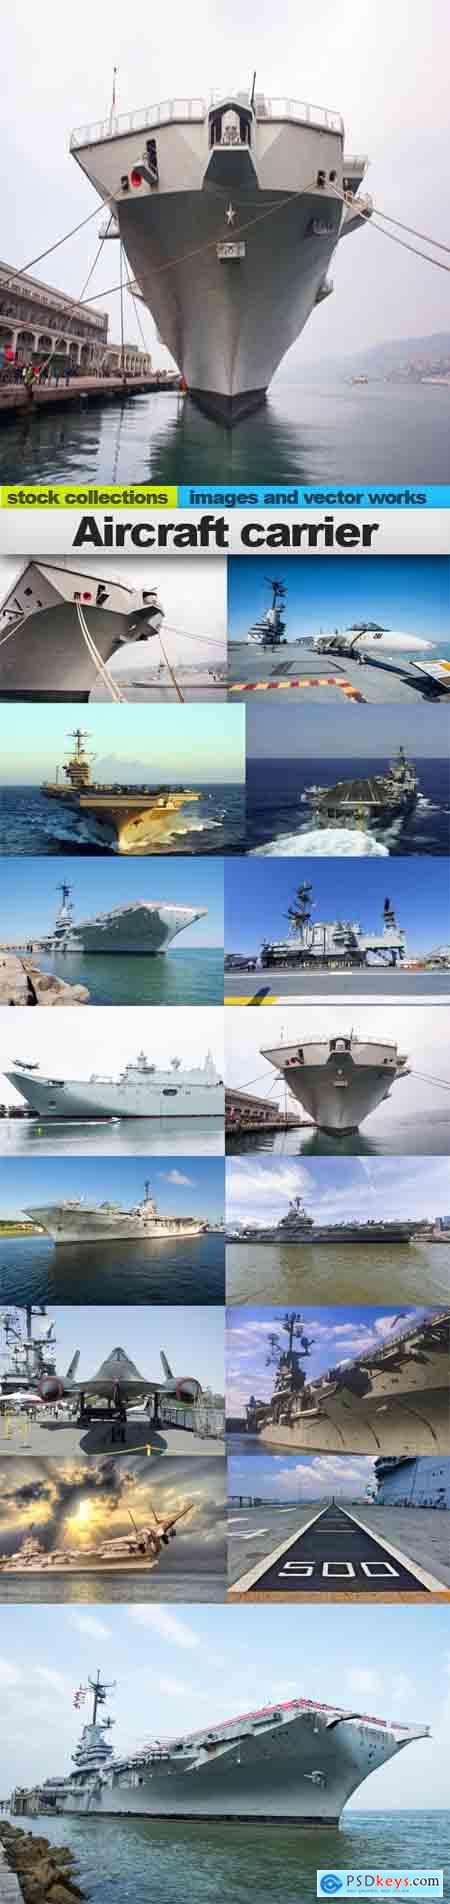 Aircraft carrier, 15 x UHQ JPEG